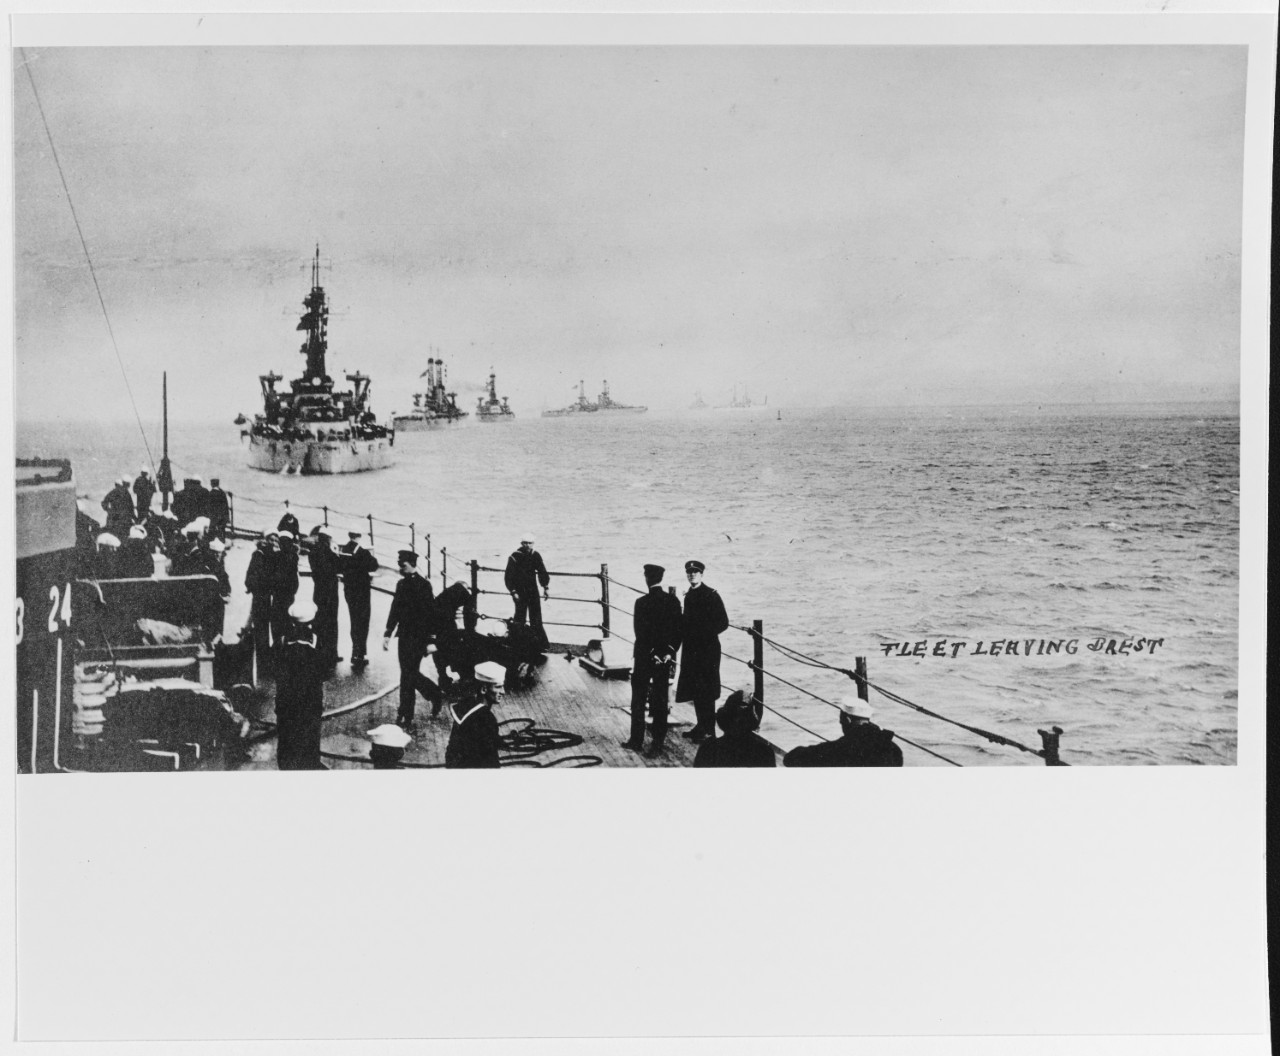 U.S. battleship fleet leaving Brest, France, 16 December 1918.